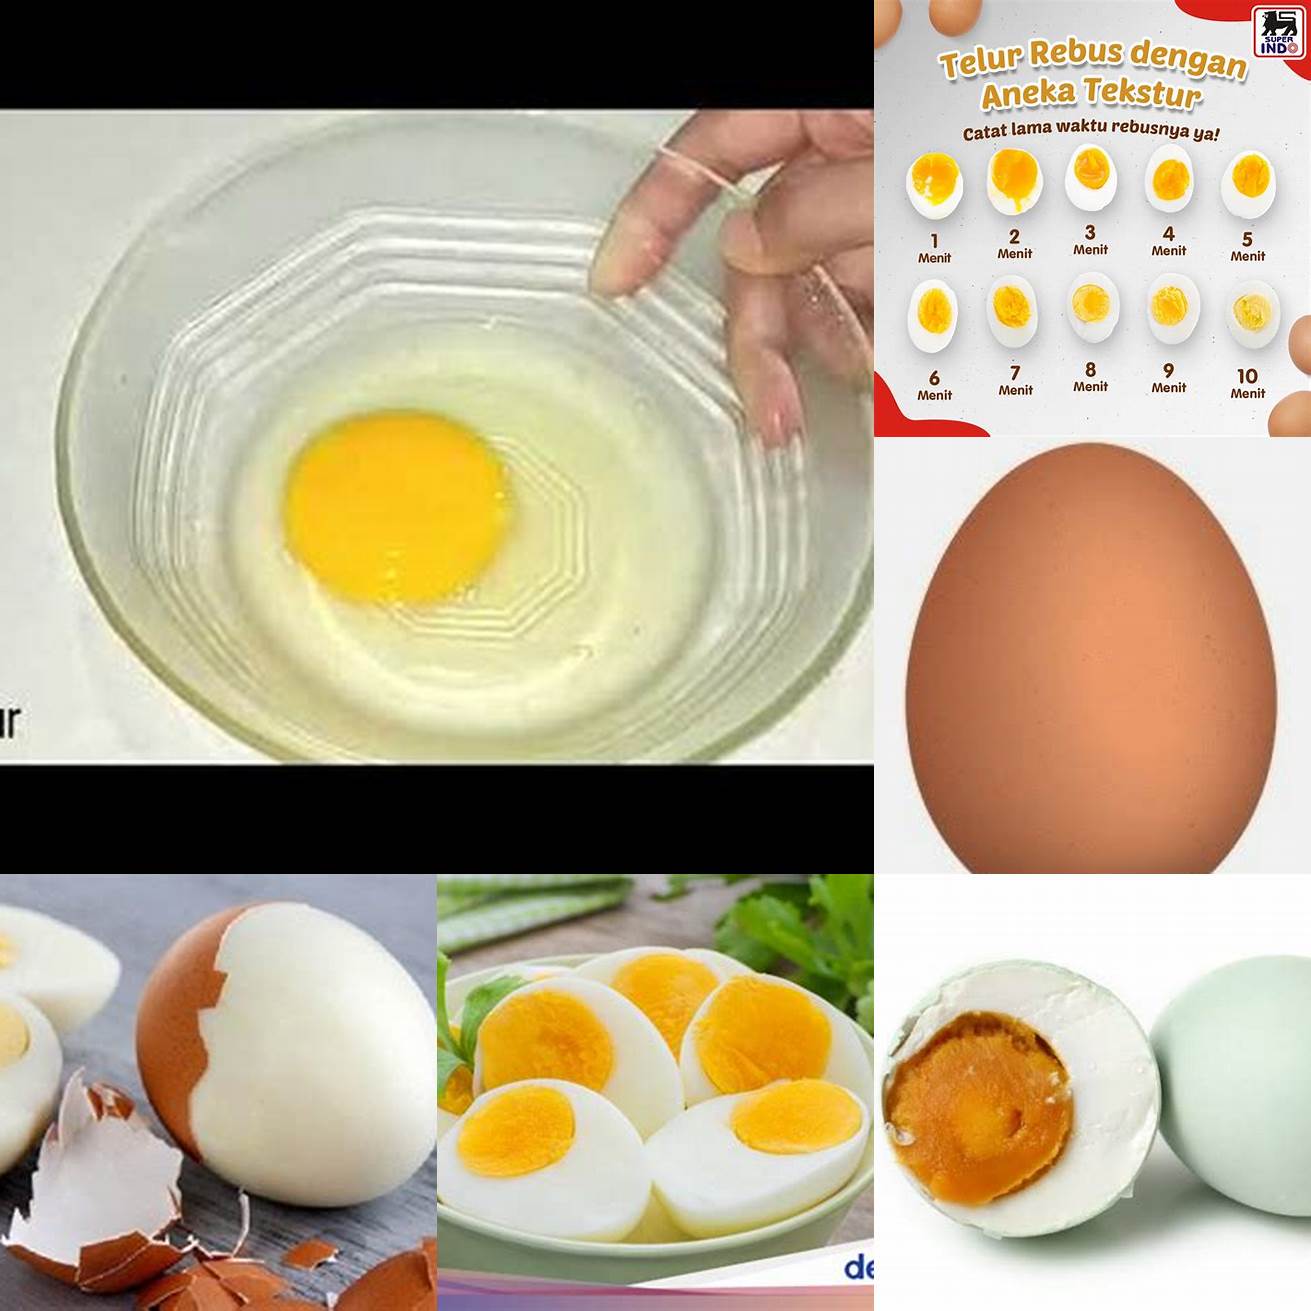 1 butir telur